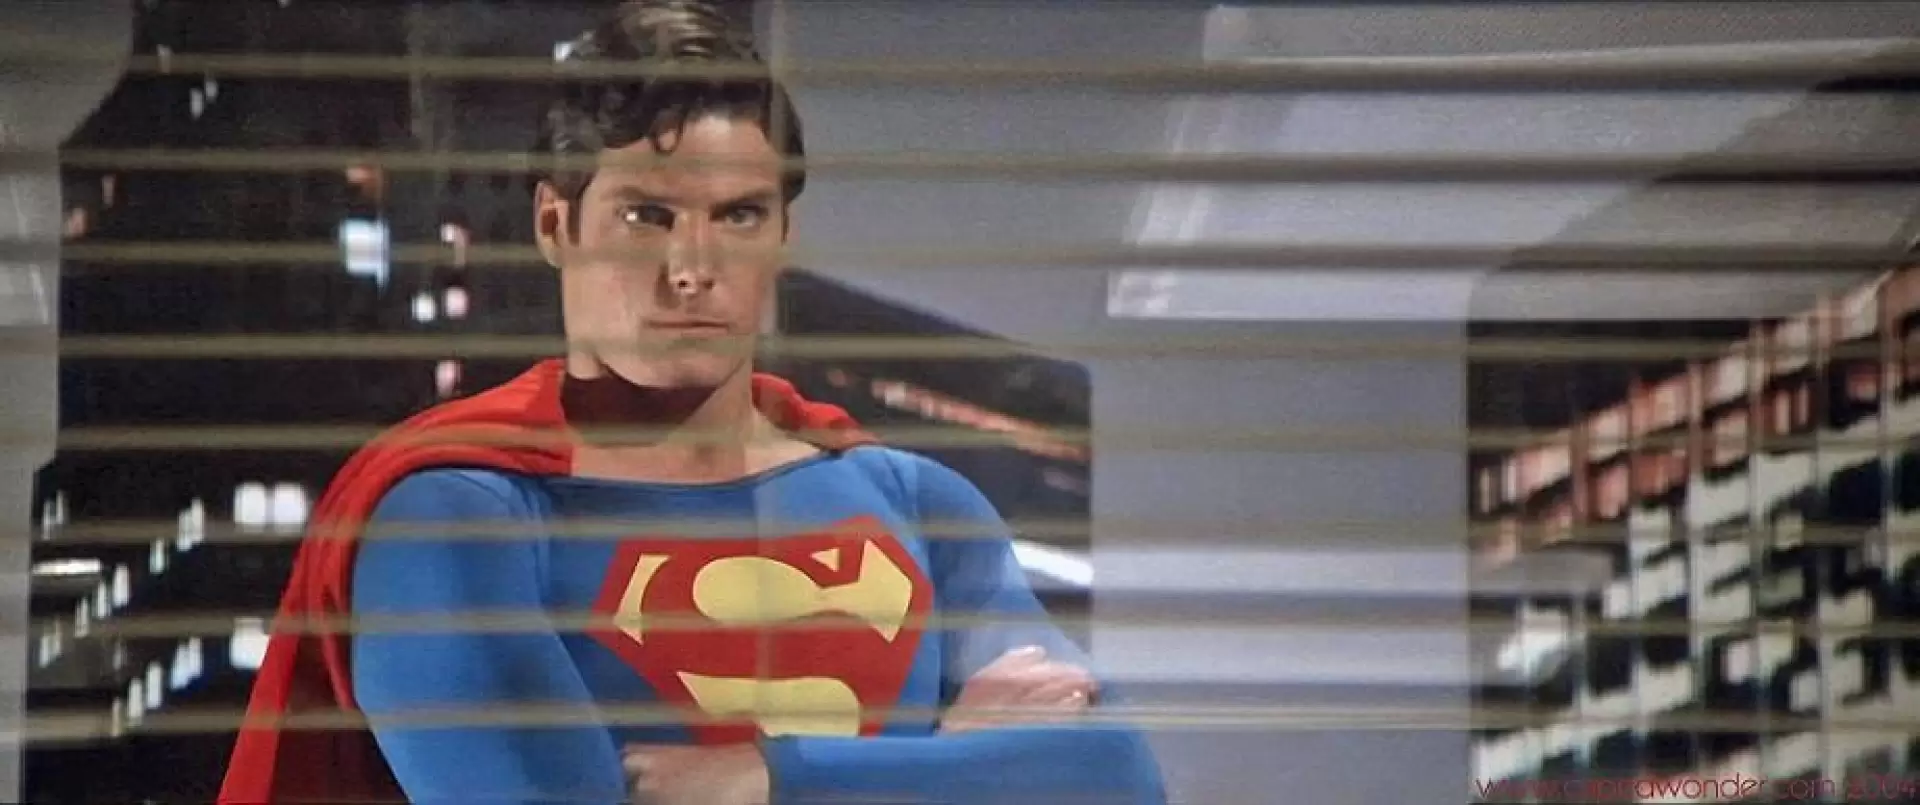 دانلود فیلم Superman II: The Richard Donner Cut 1980 (سوپرمن ۲: ریچارد دونر کات) با زیرنویس فارسی و تماشای آنلاین